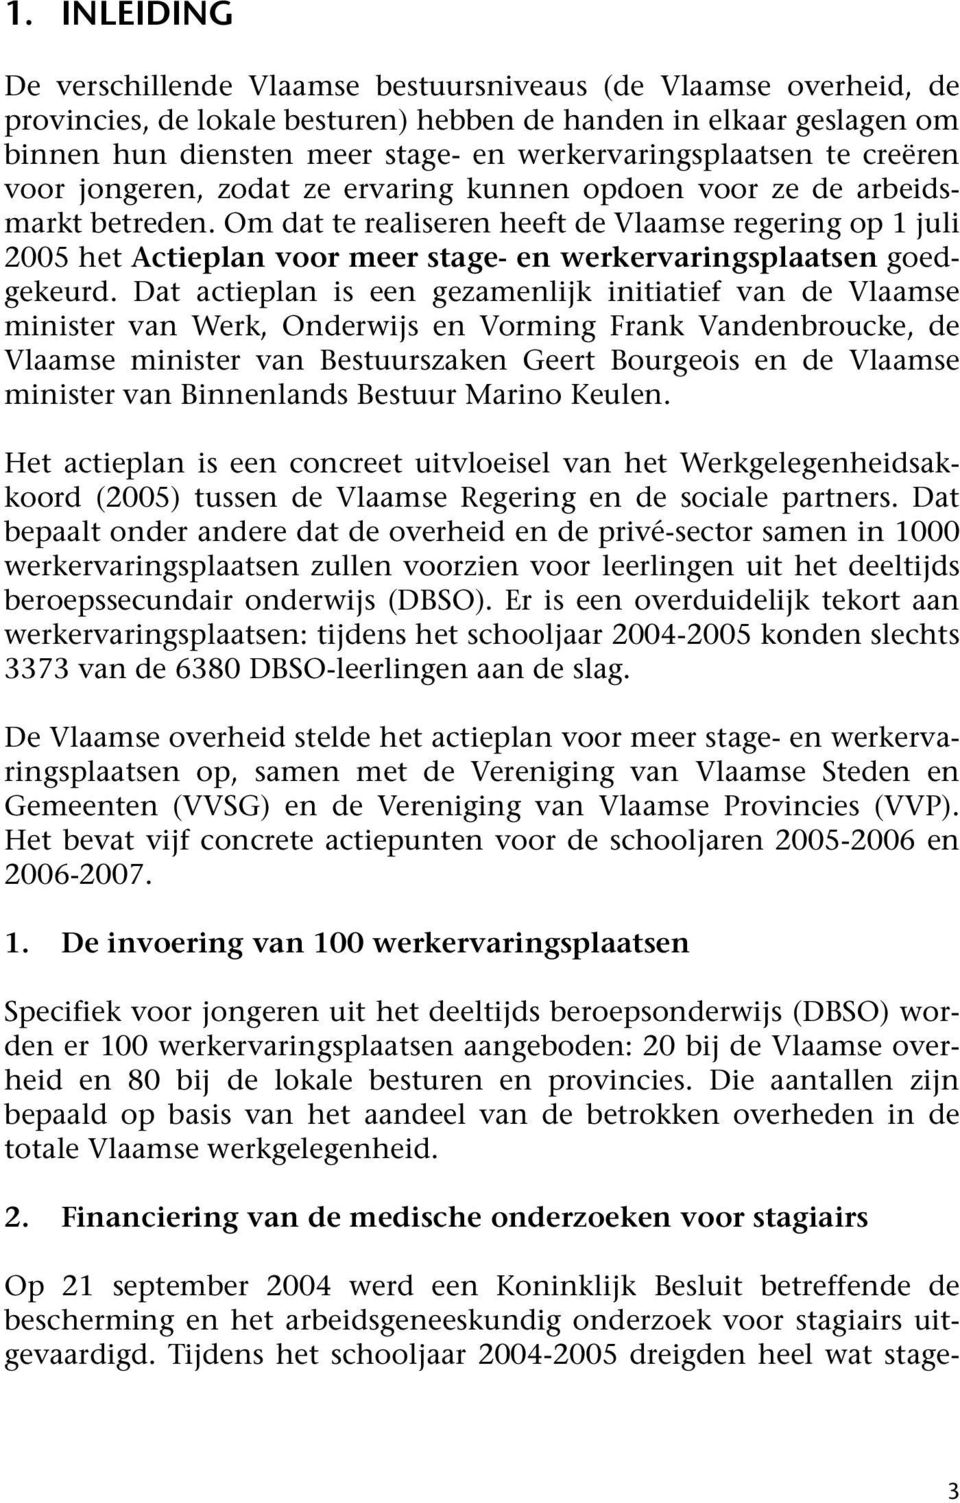 Om dat te realiseren heeft de Vlaamse regering op 1 juli 2005 het Actieplan voor meer stage- en werkervaringsplaatsen goedgekeurd.